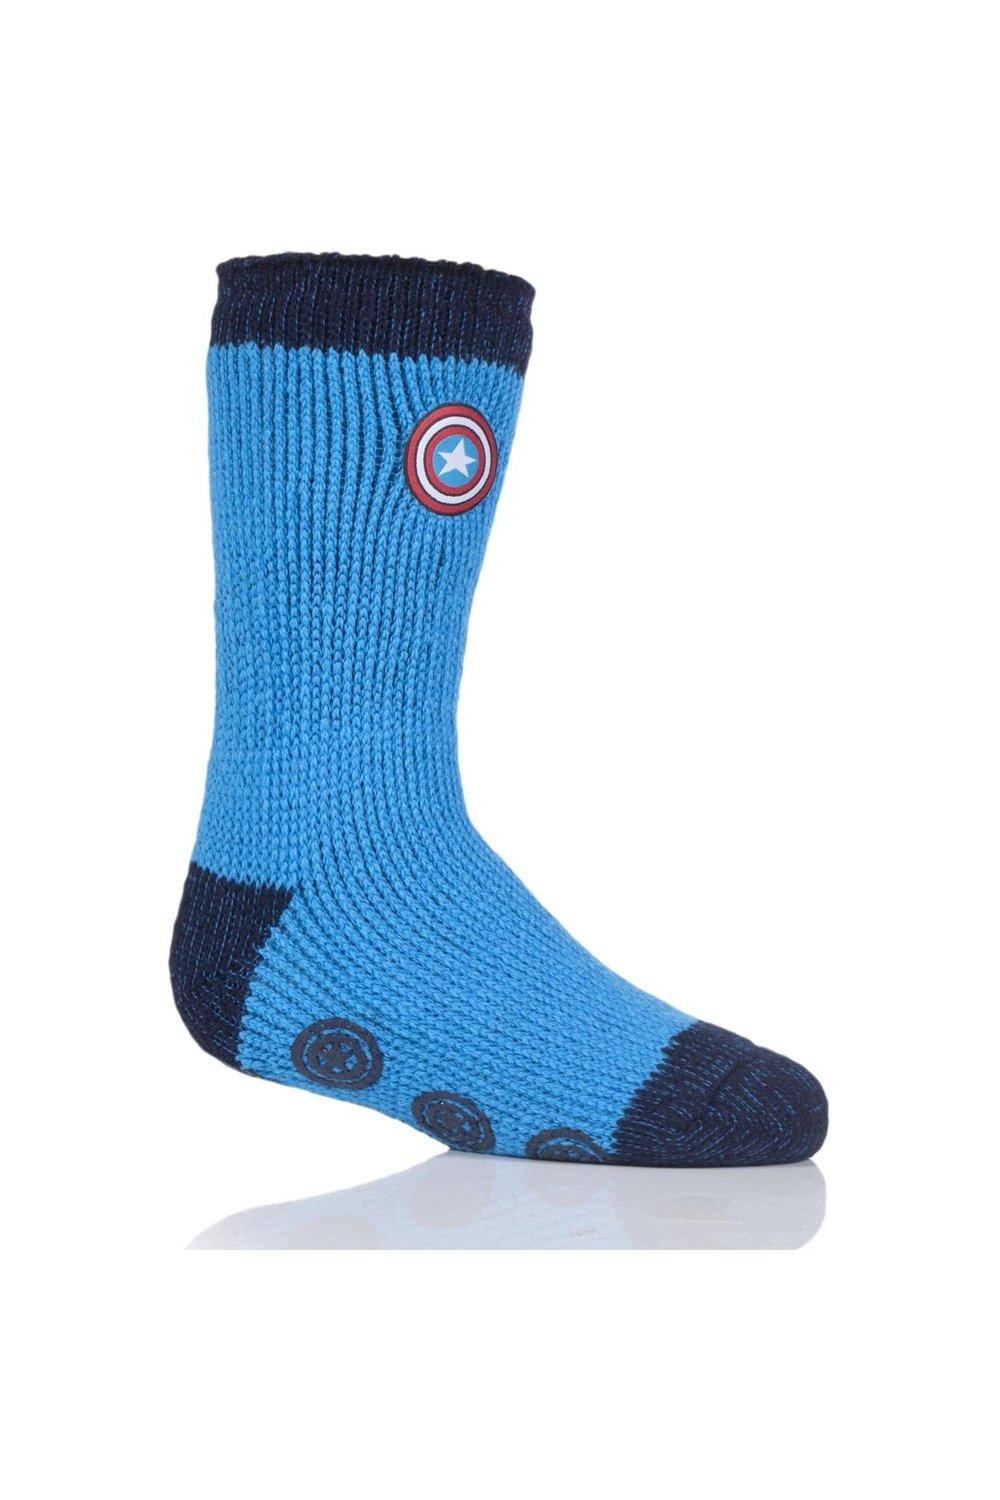 1 Pair Marvel's Captain America Shield Slipper Socks